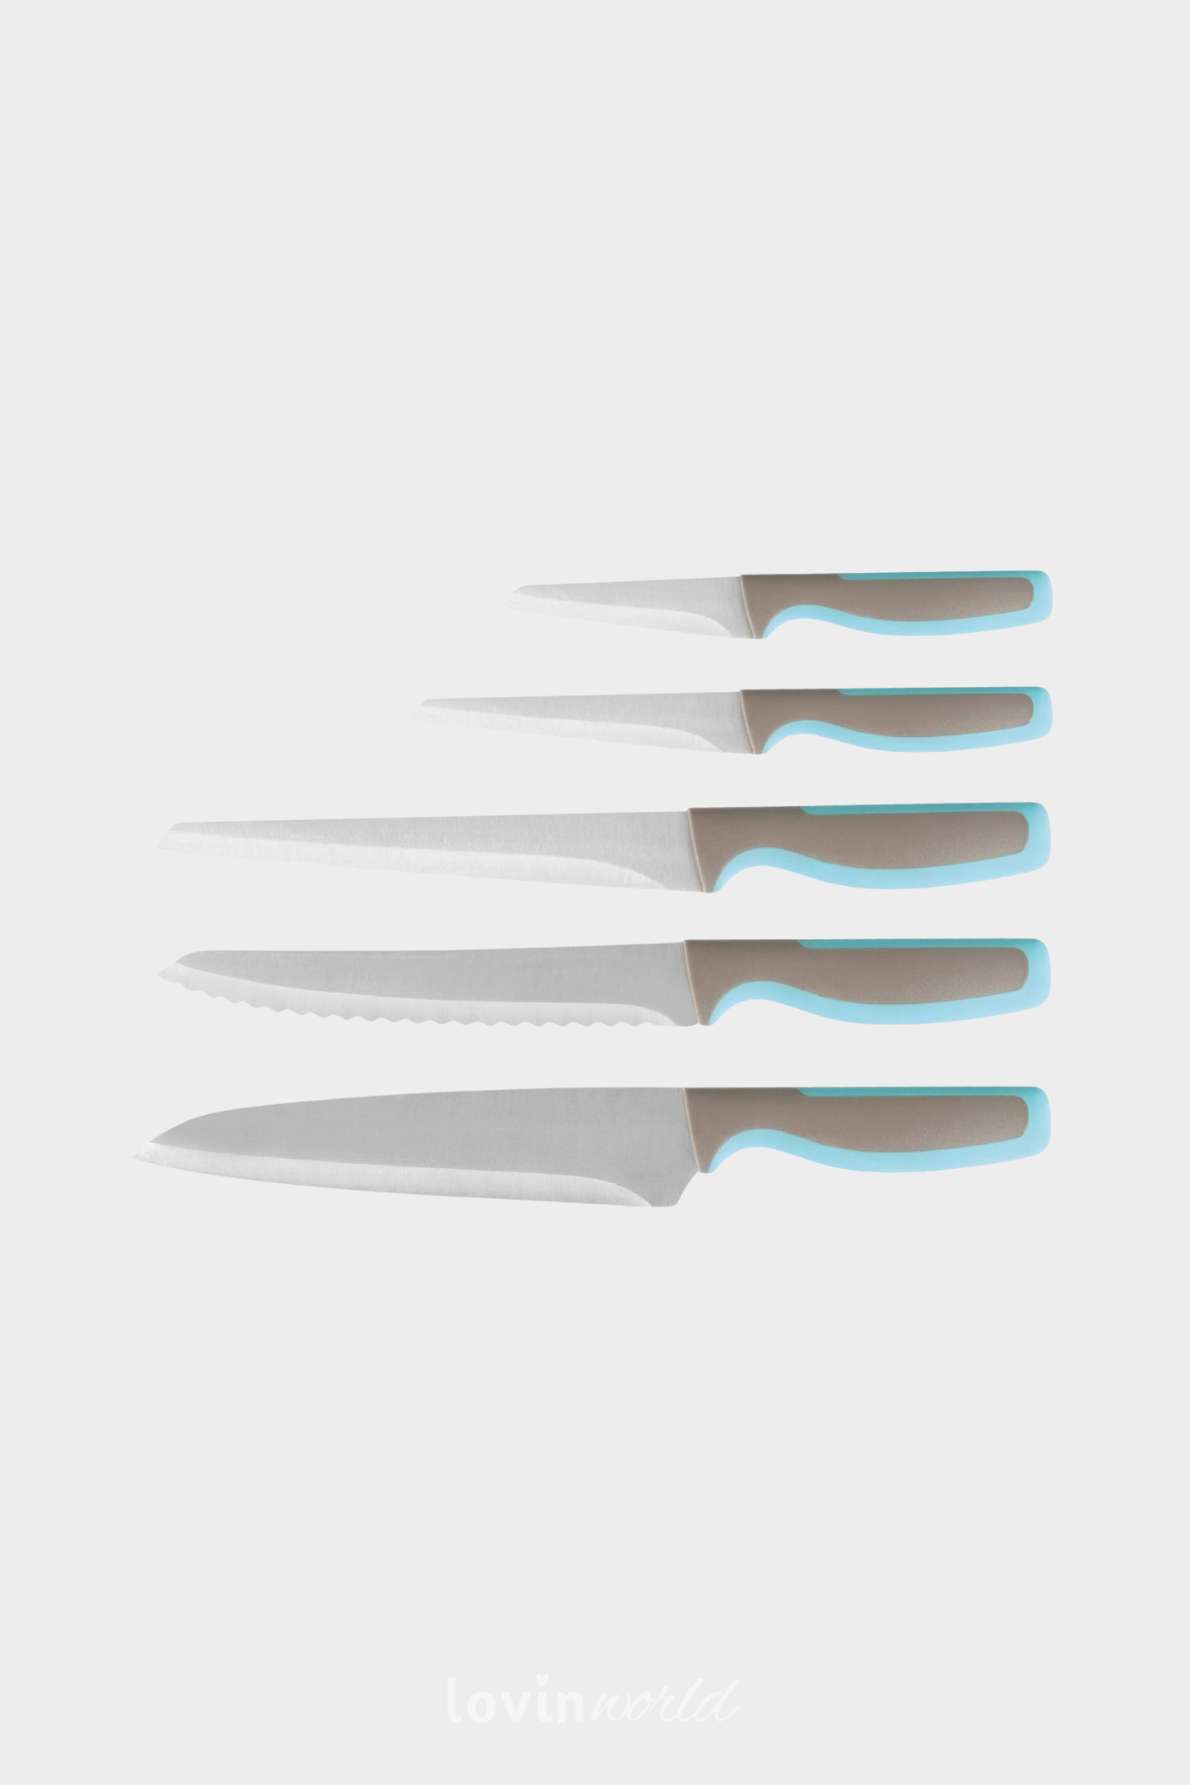 Ceppo magnetico con 5 coltelli da pane, arrosto e cucina, manico azzurro-2